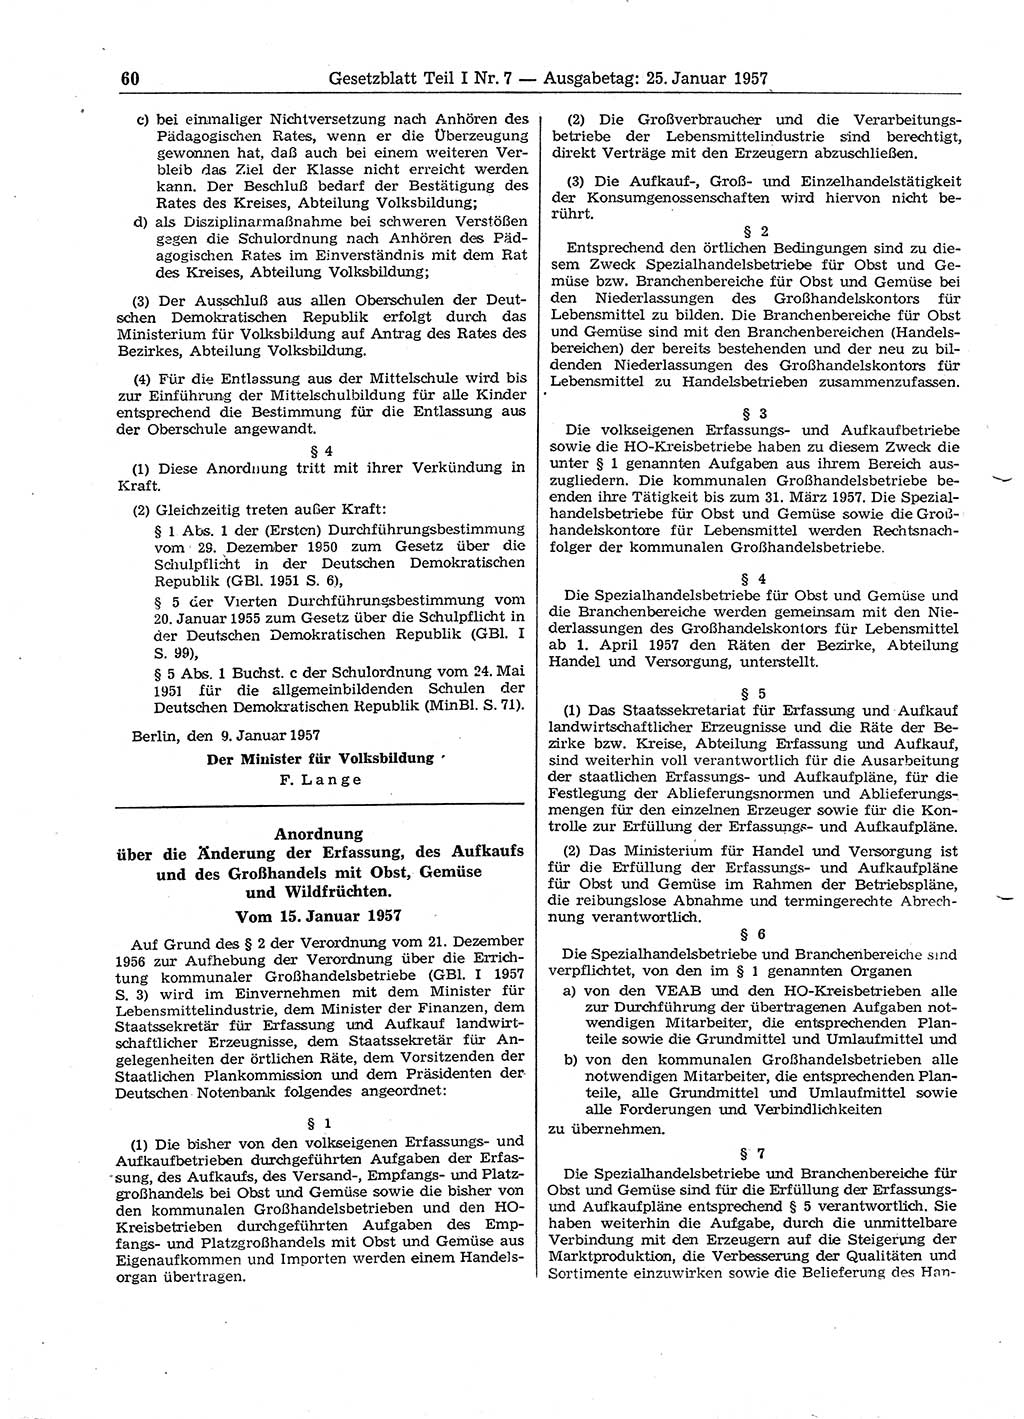 Gesetzblatt (GBl.) der Deutschen Demokratischen Republik (DDR) Teil Ⅰ 1957, Seite 60 (GBl. DDR Ⅰ 1957, S. 60)